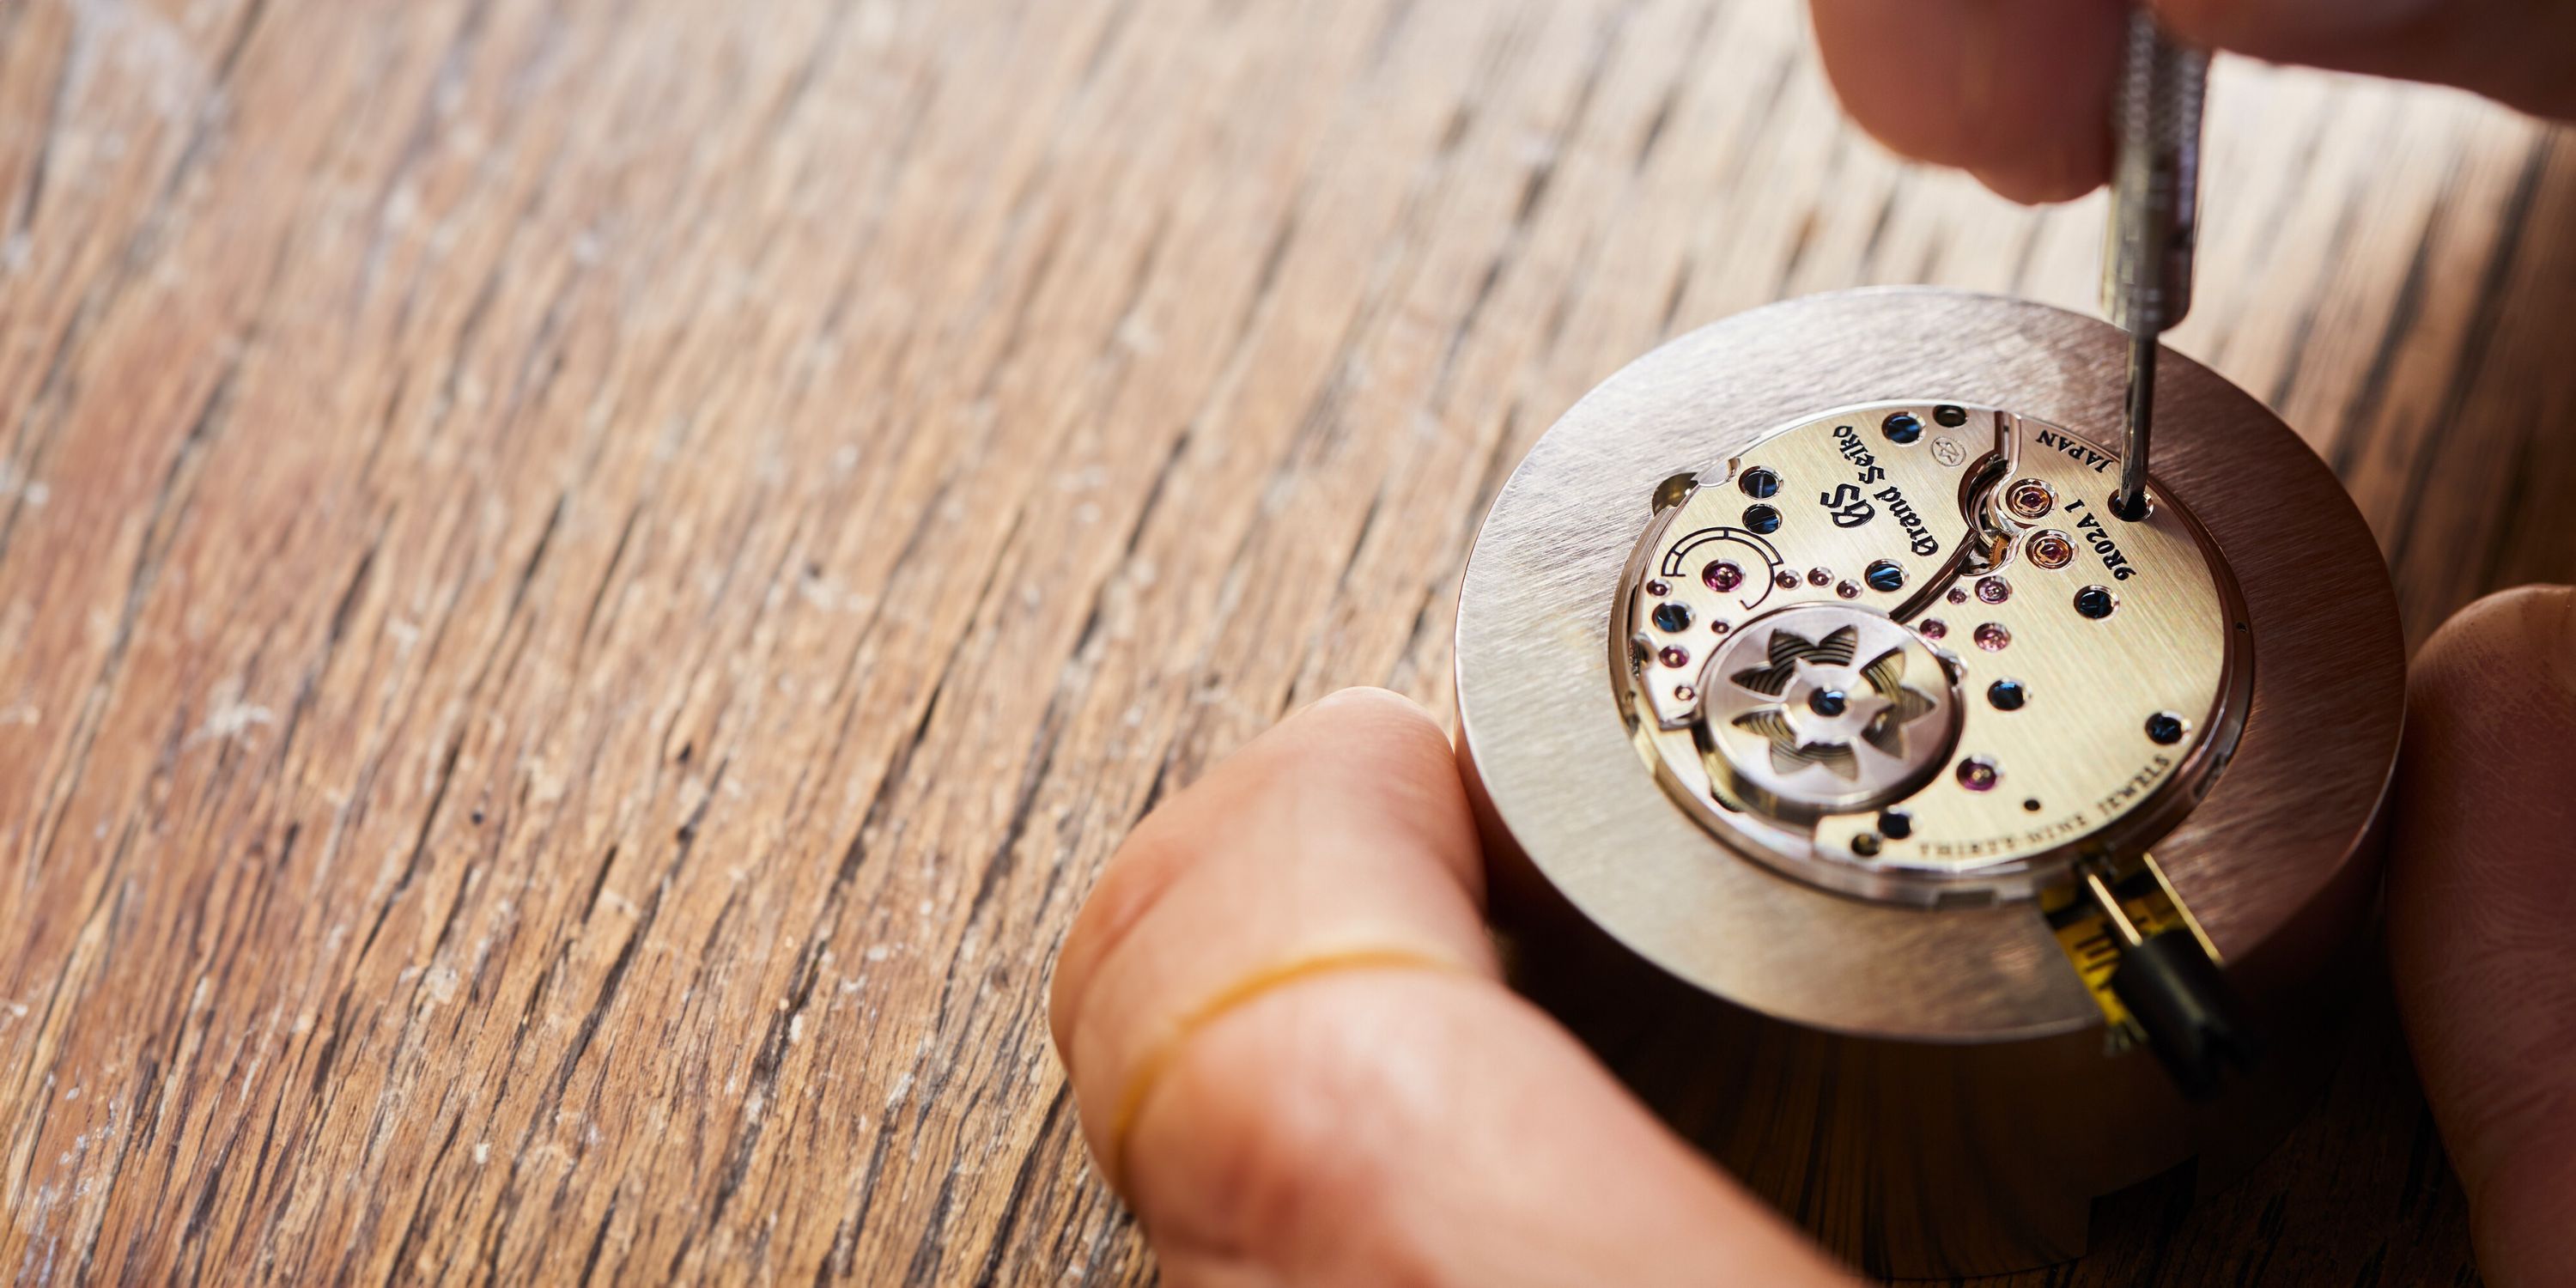 Das Kaliber 9R von Grand Seiko auf einem Holztisch liegend während der Montage eines Uhrmachers, dessen Hände zu sehen sind